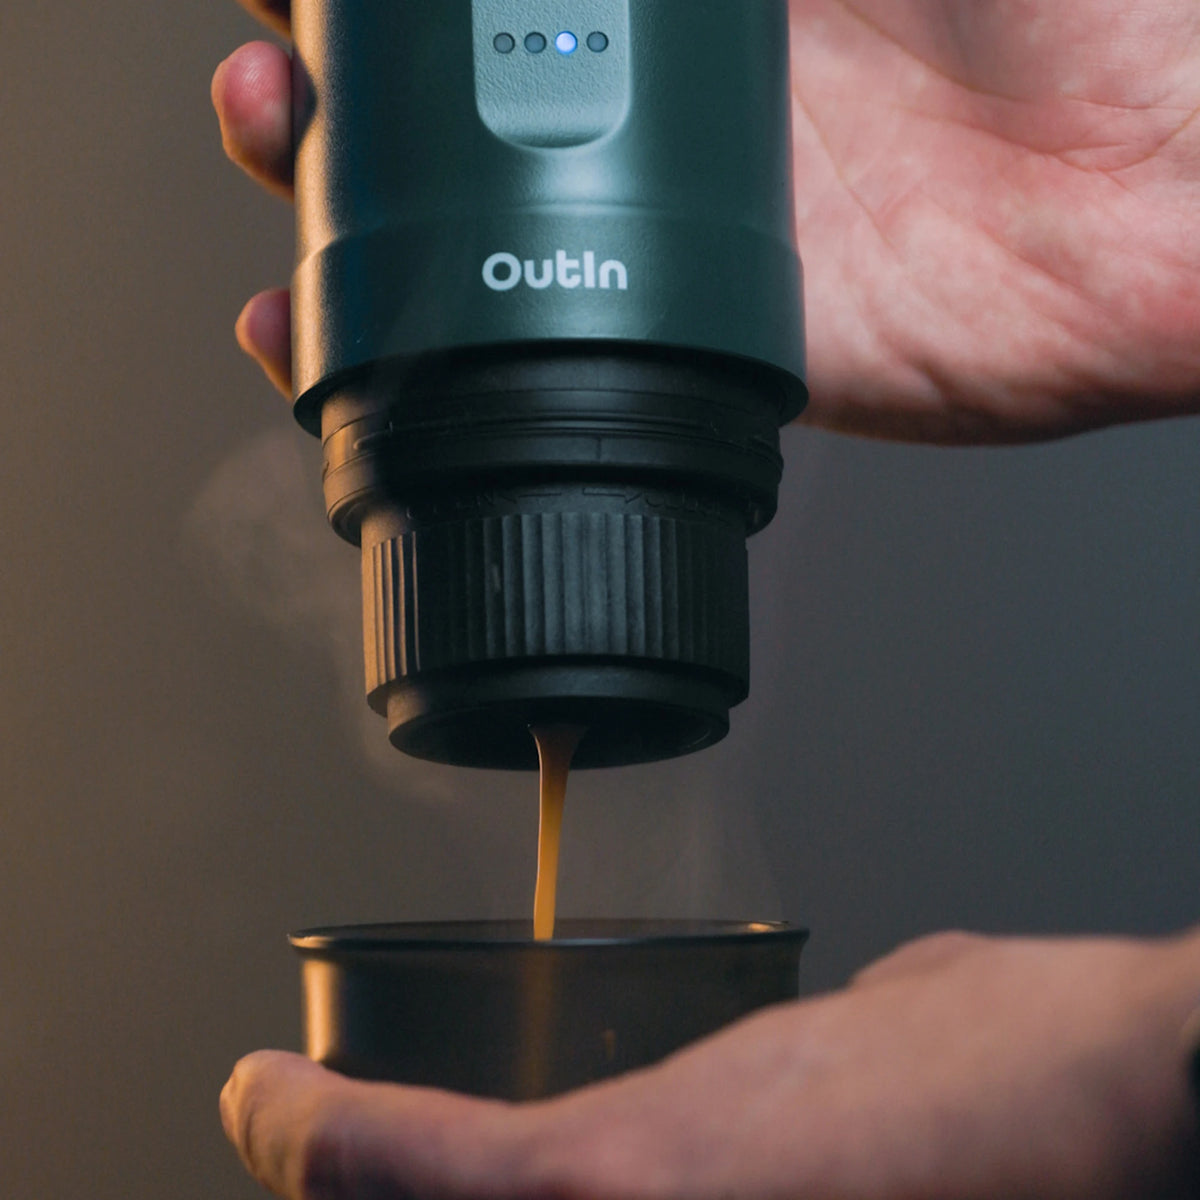 Outin Nano Tragbare Espresso Maschine (Outin Teal) - Coffee Coaching Club